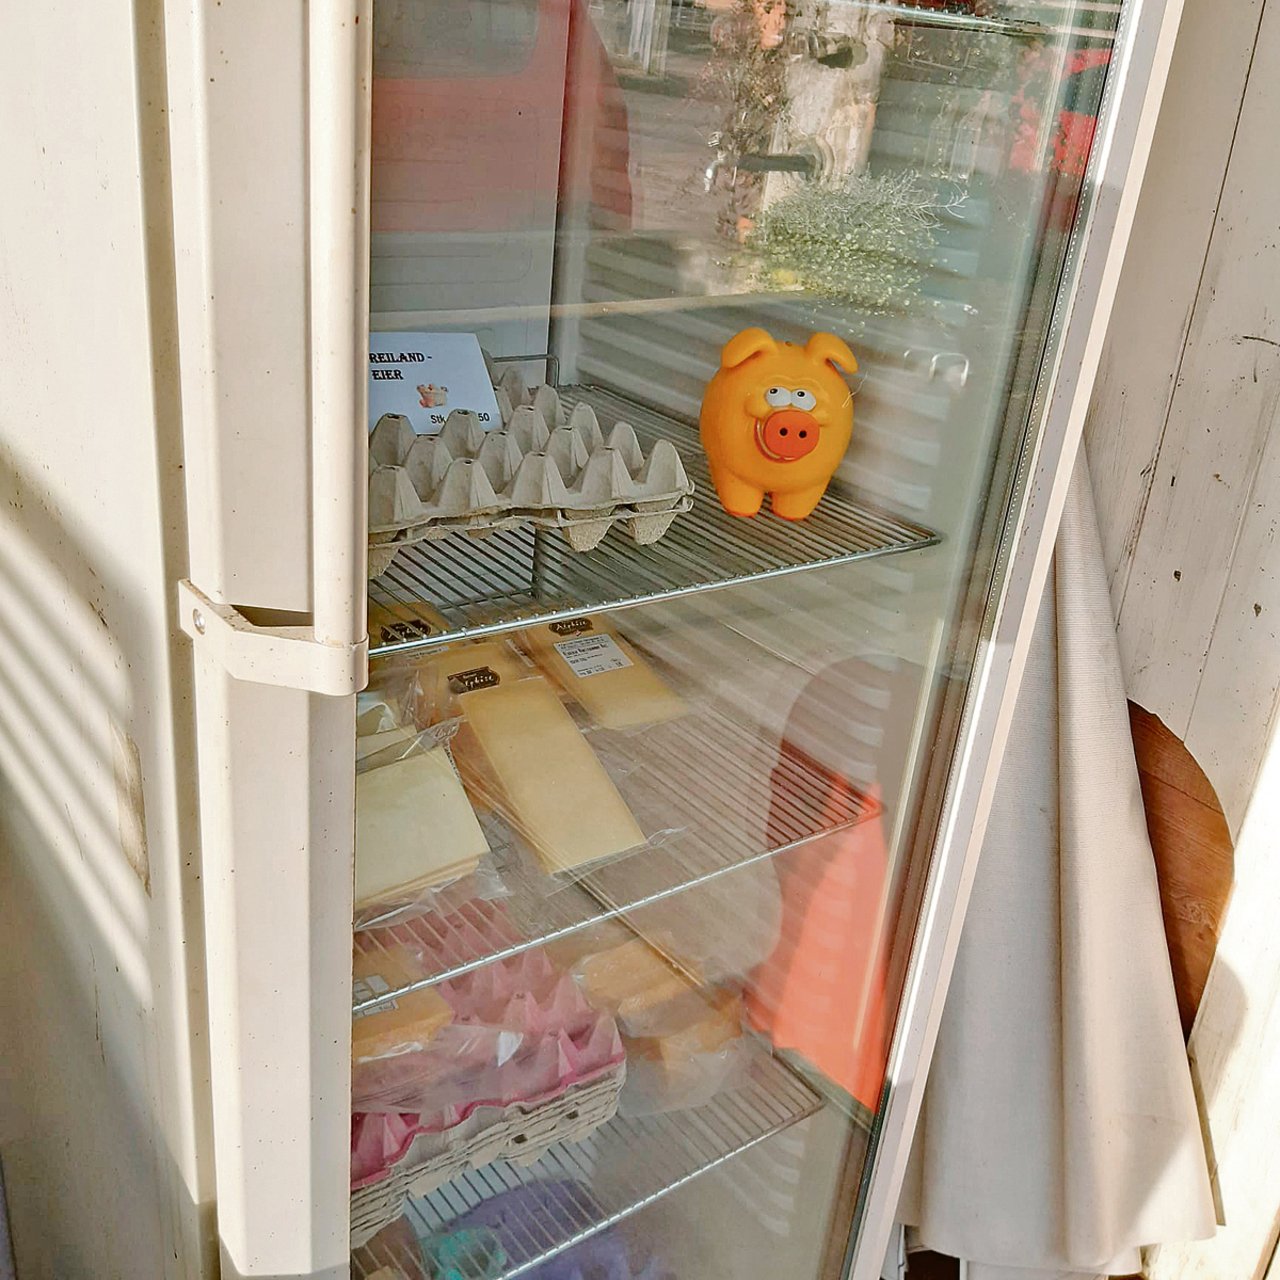 Kühlschränke im Freien dürfen offen bleiben. (Bild wl)